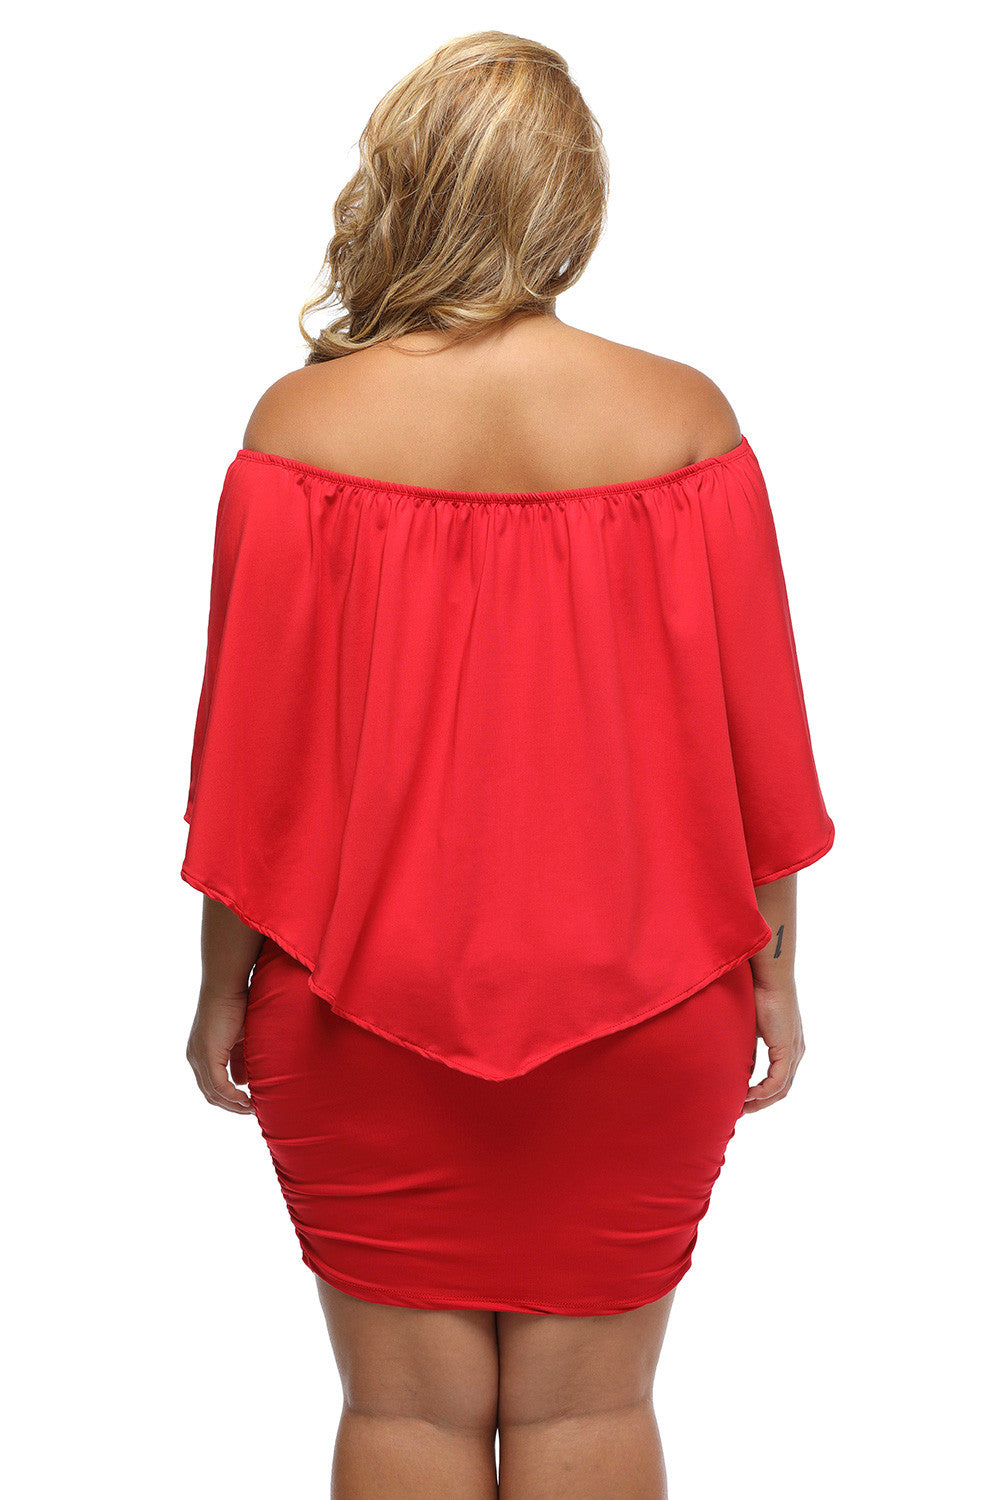 Multi-way Layered Ruffle Red Mini Plus Size Dress